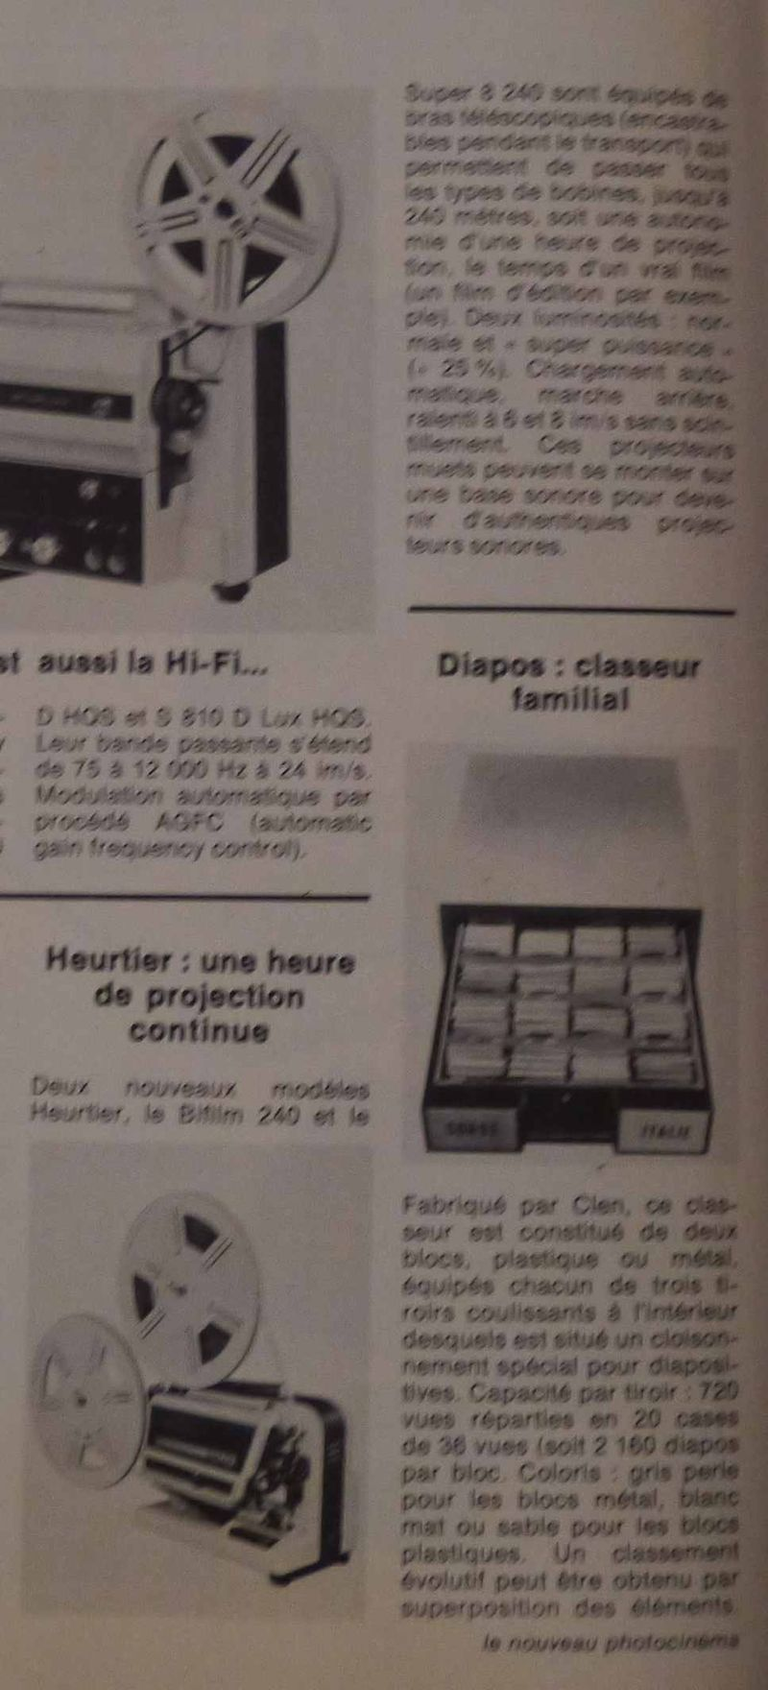 Heurtier projecteurs Bi-Film 240, Super 8 240 - février 1975 - Le Nouveau PhotoCinéma n°32